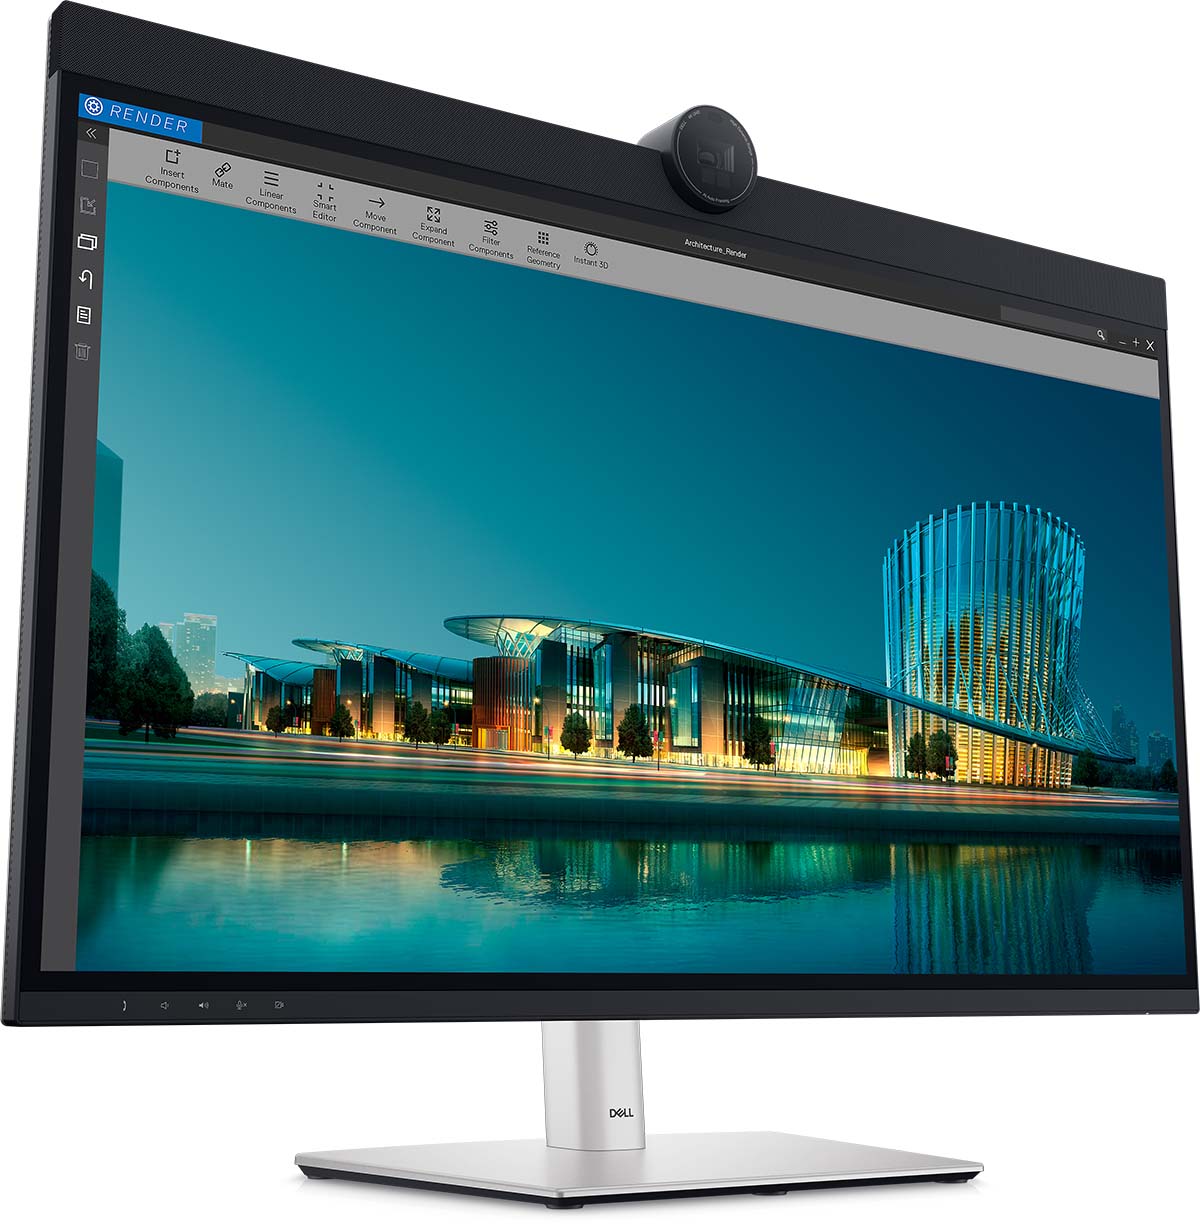 Dell ha anunciado el primer monitor 6K del mundo con tecnología IPS Black